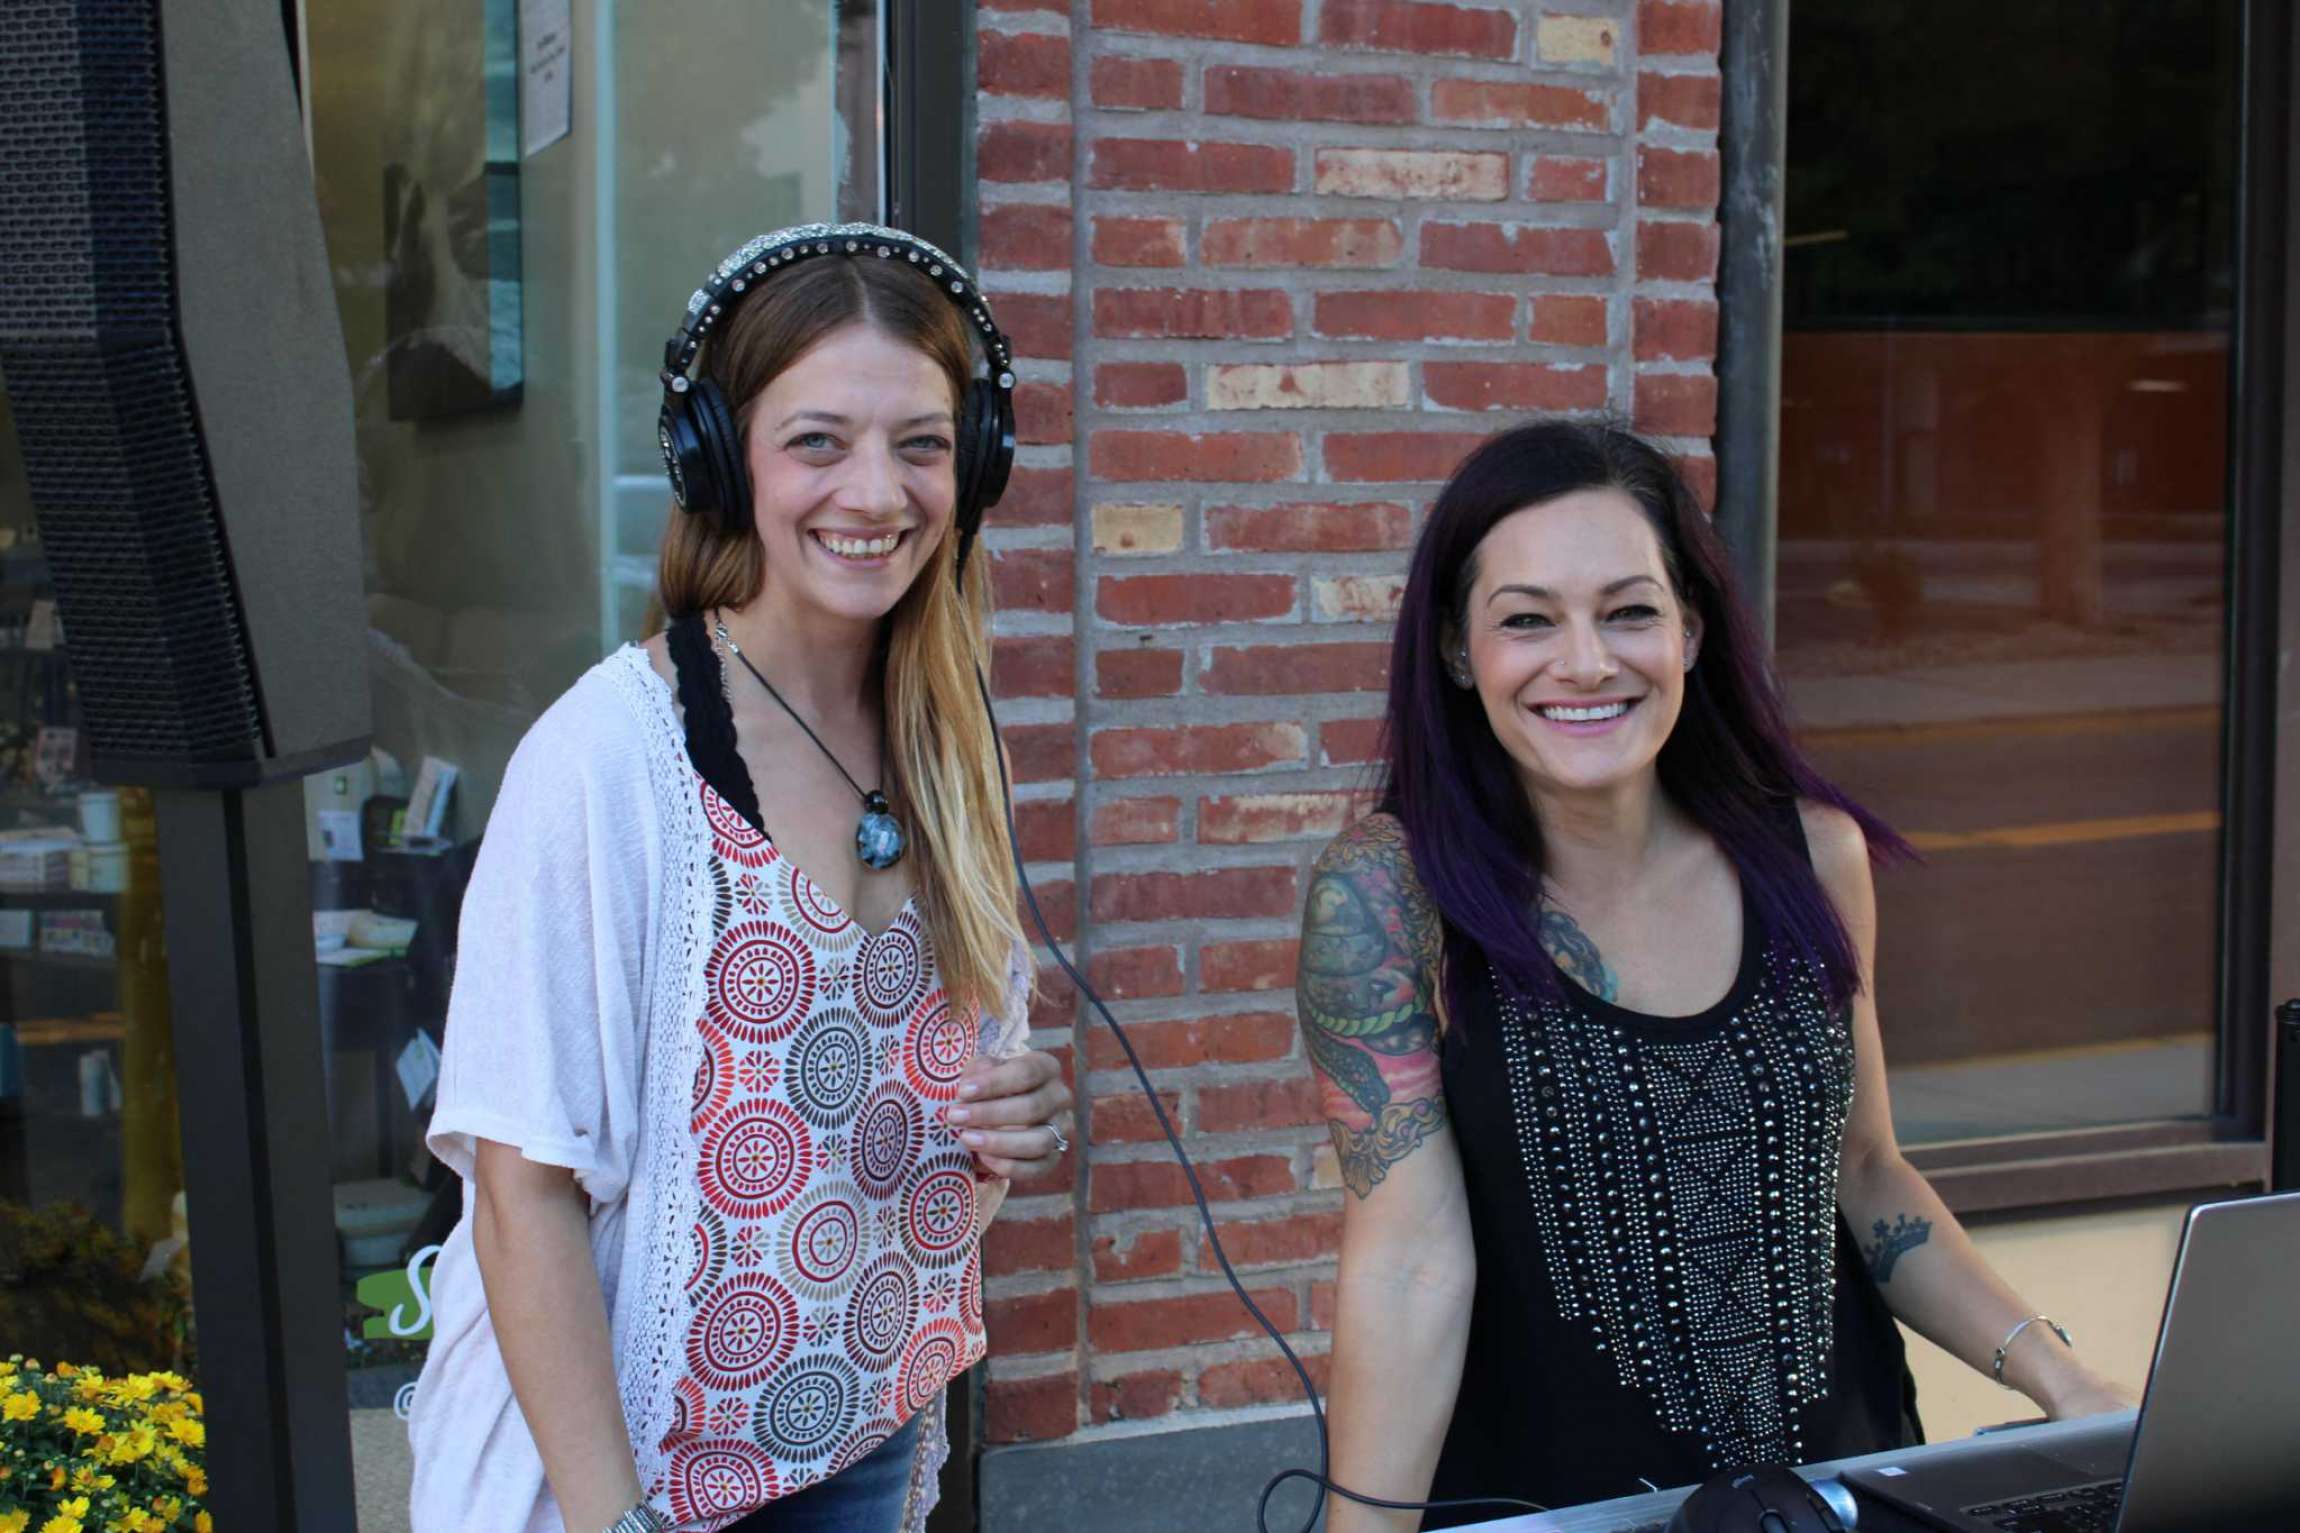 Middletown's Sugar Leaf CBD shop supports female entrepreneurs